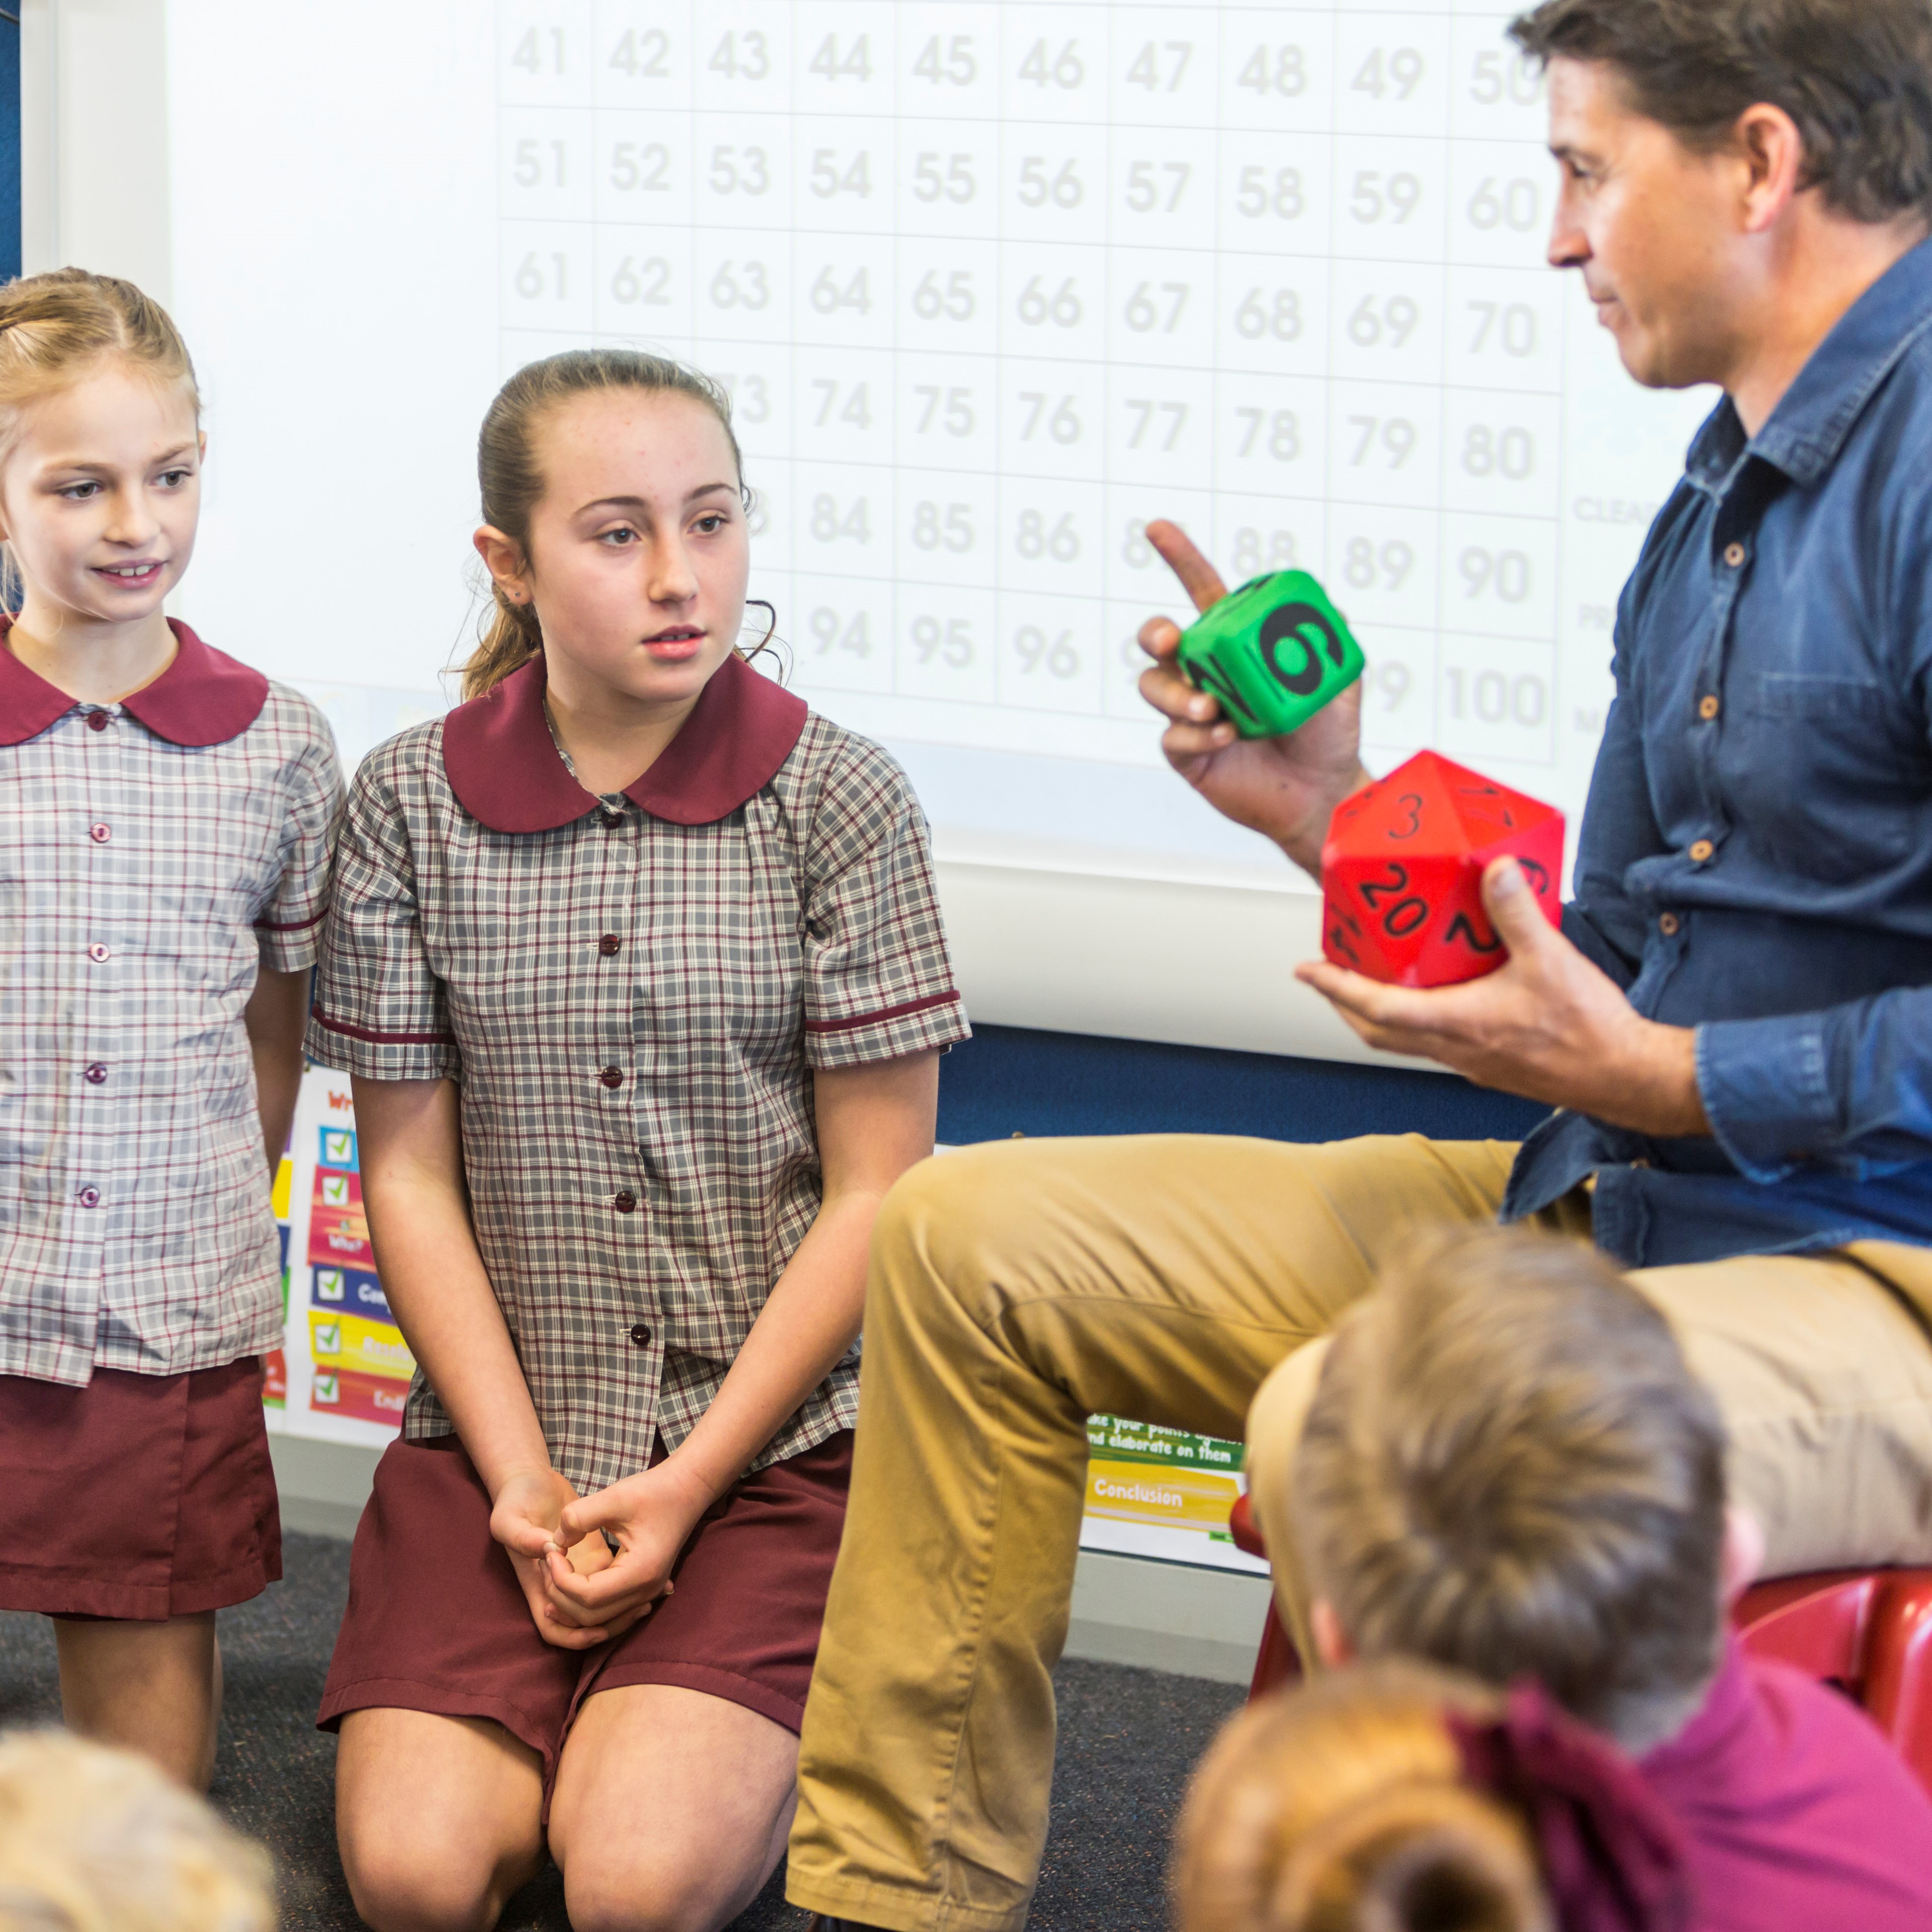 Queensland Department of Education primary schools